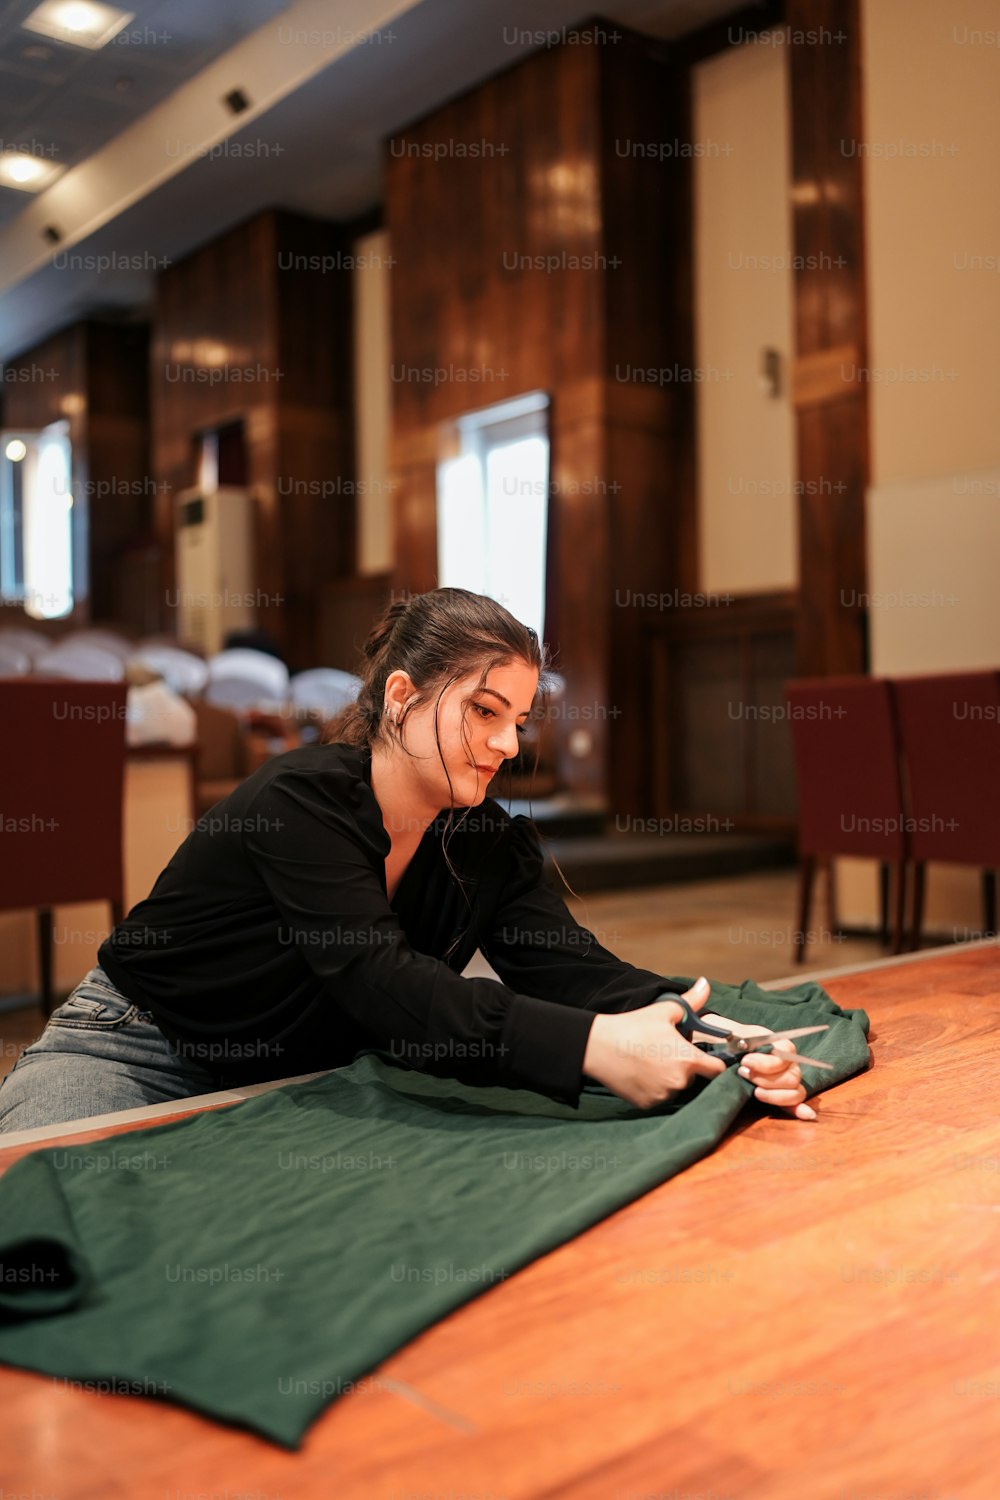 una donna seduta sul pavimento usando un telefono cellulare